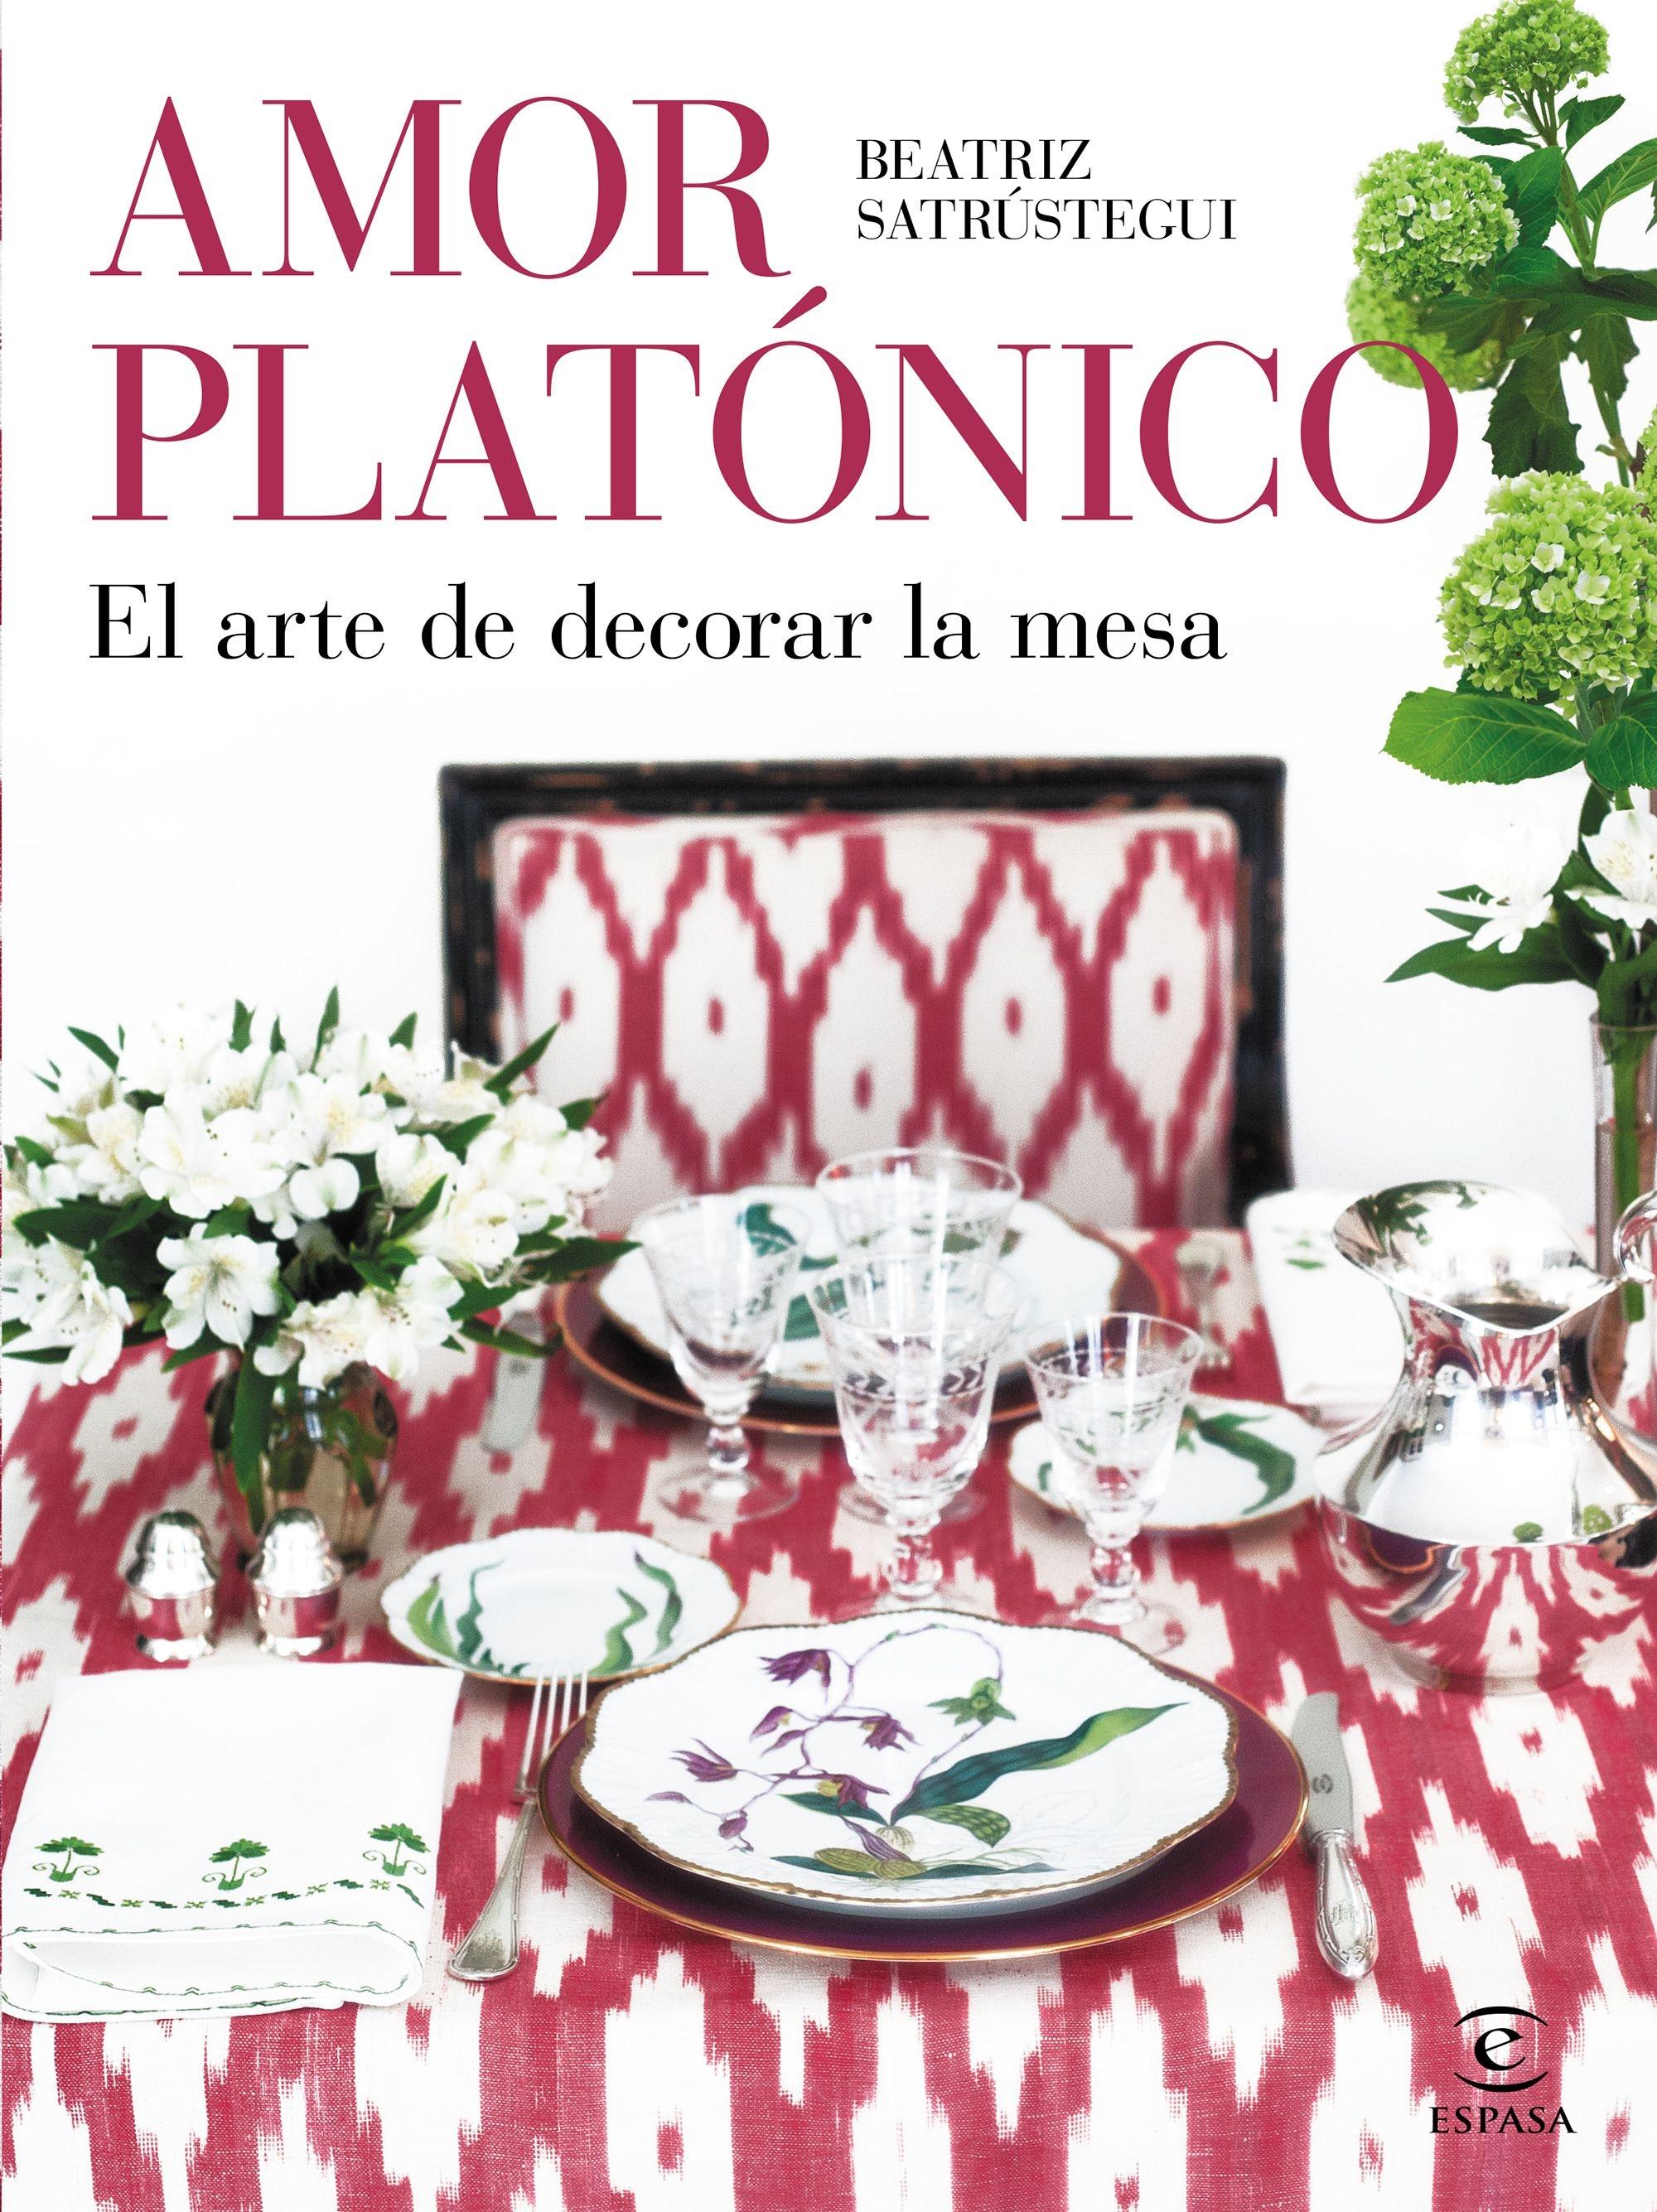 Amor platónico "El arte de decorar la mesa"